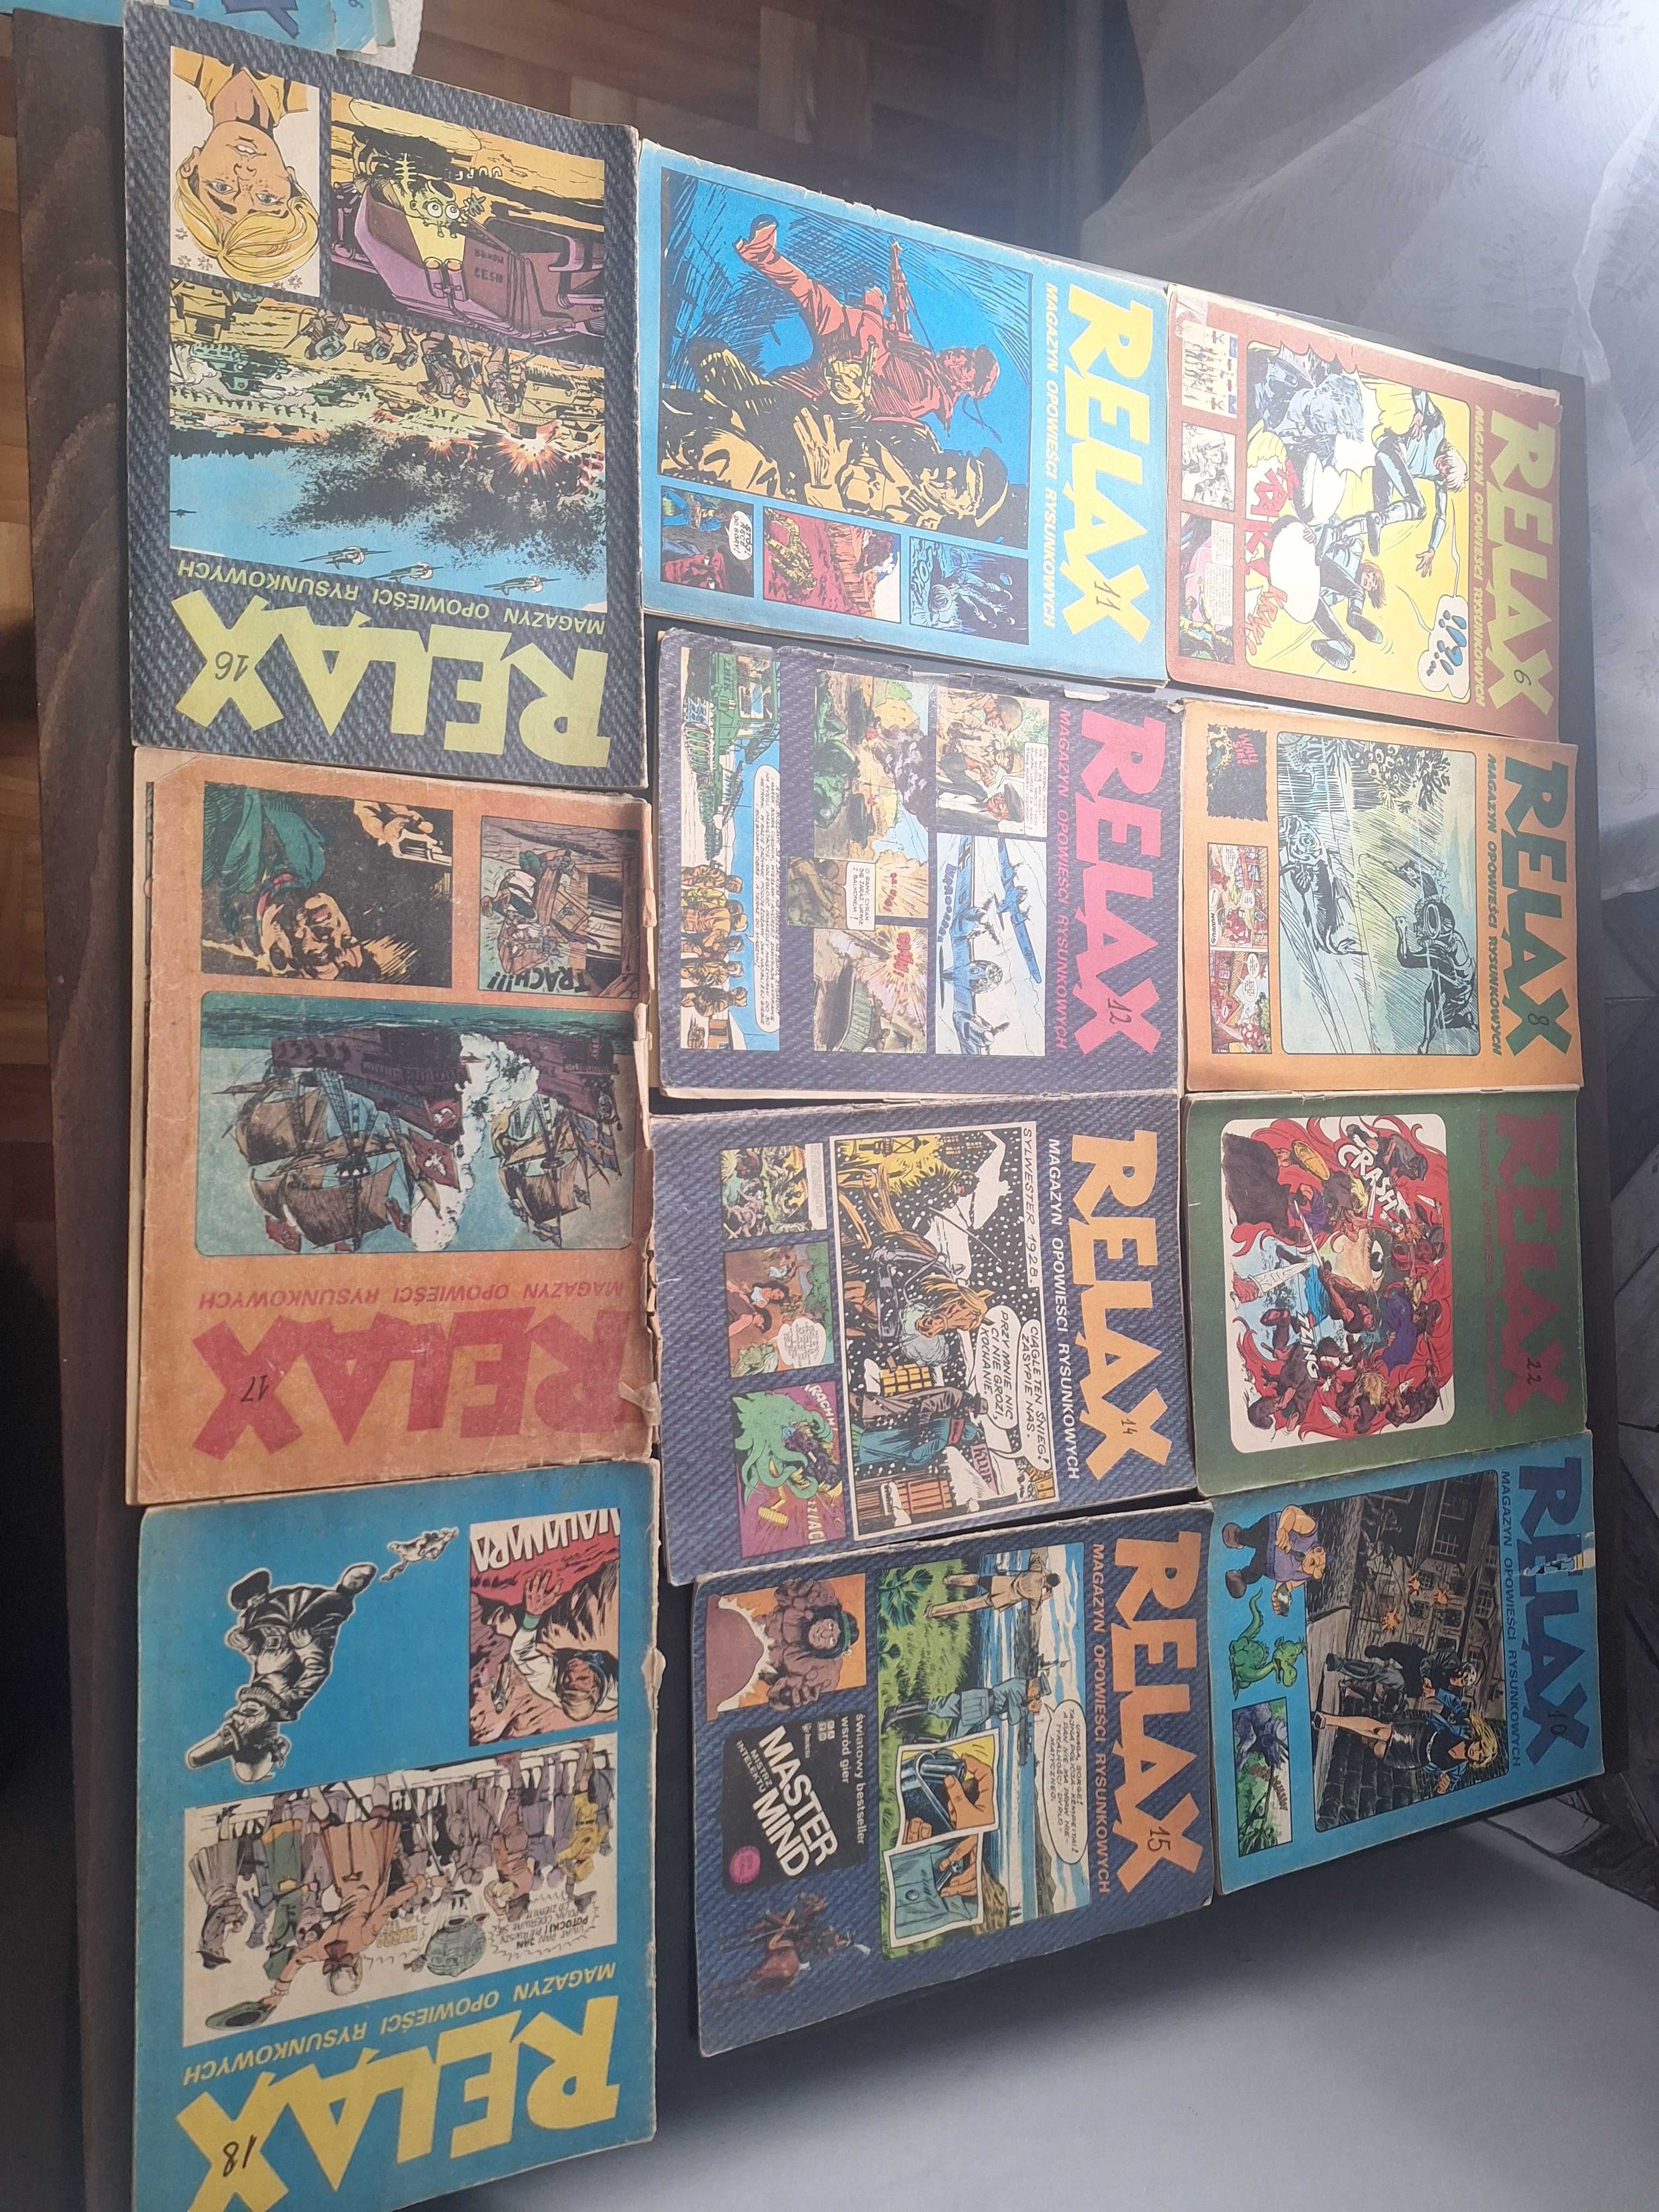 Komiksy Relax zestaw lata 70-80  18 zeszytów.